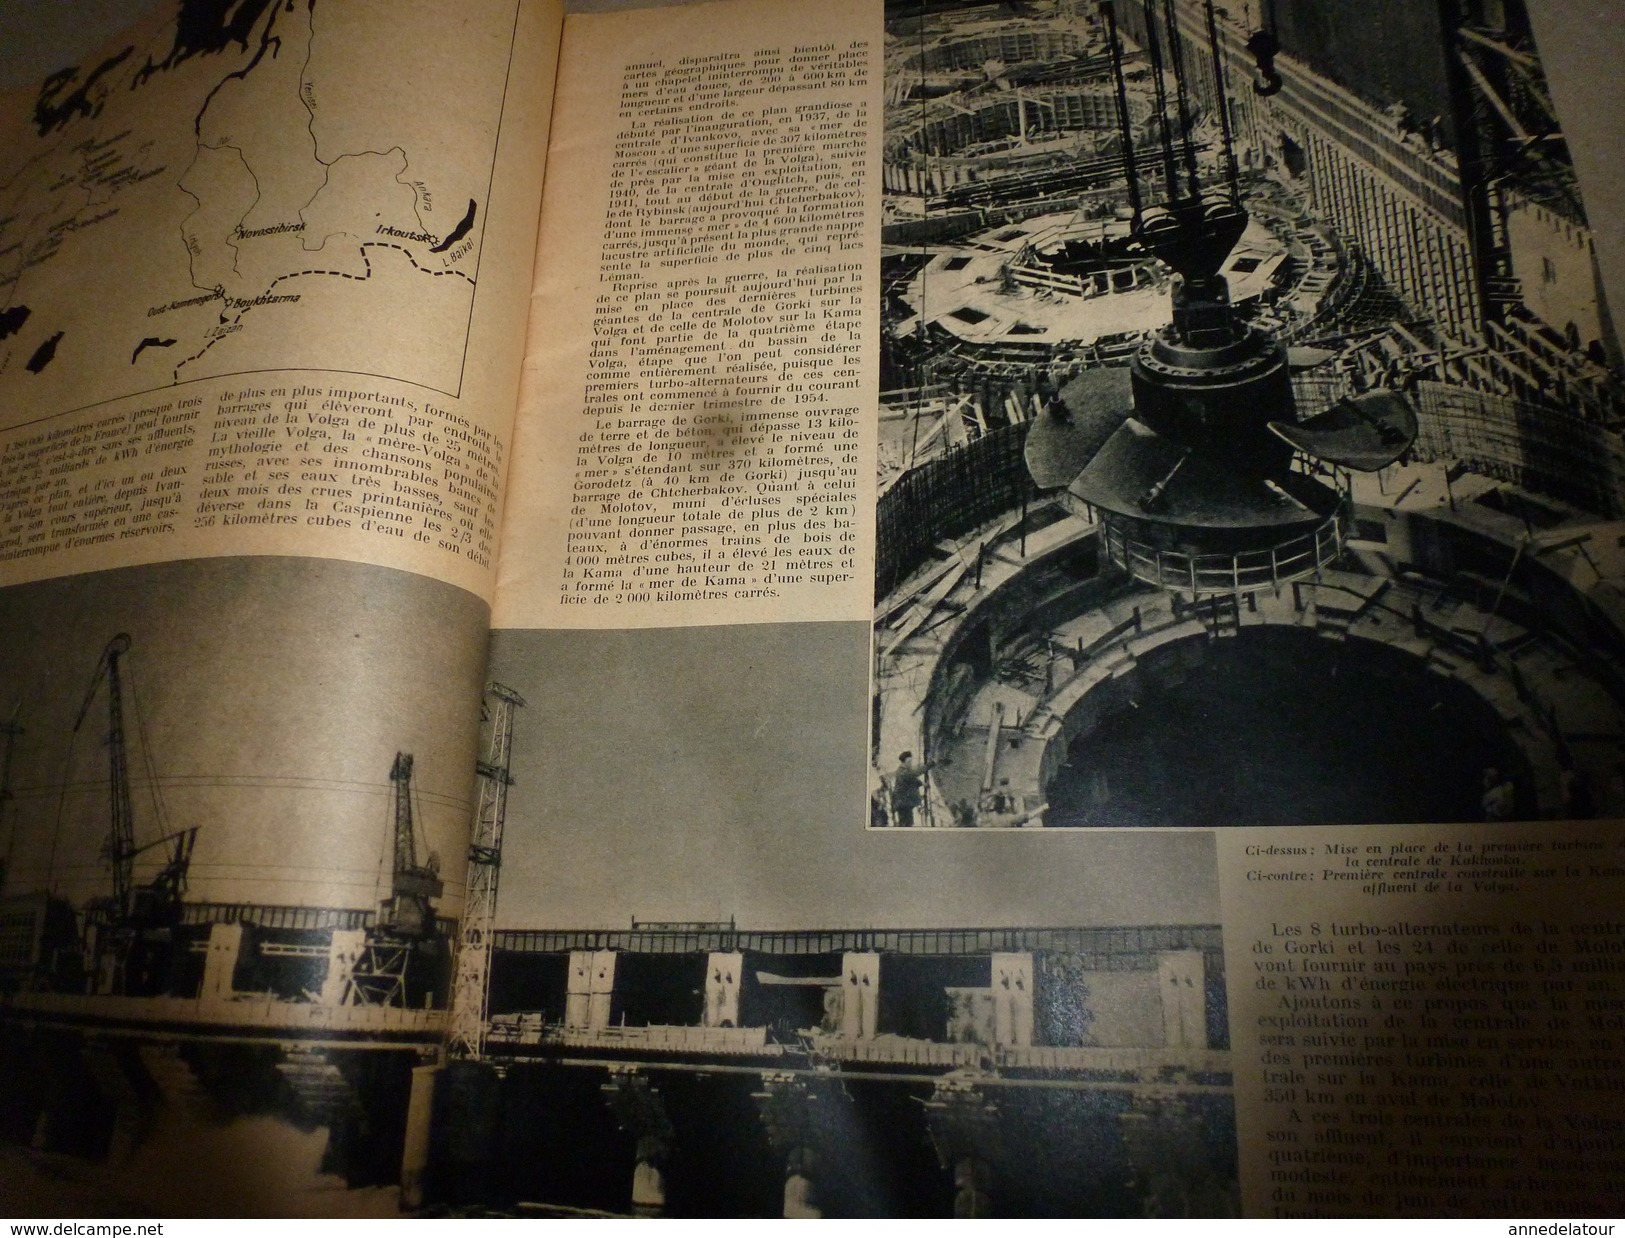 1955 SETA : Plans Centrales Atomiques;Avion LE CARAVELLE;L'HYDRO-ELECTRIQUE De Russie;Trains Télécommandés;Entomologie - Science